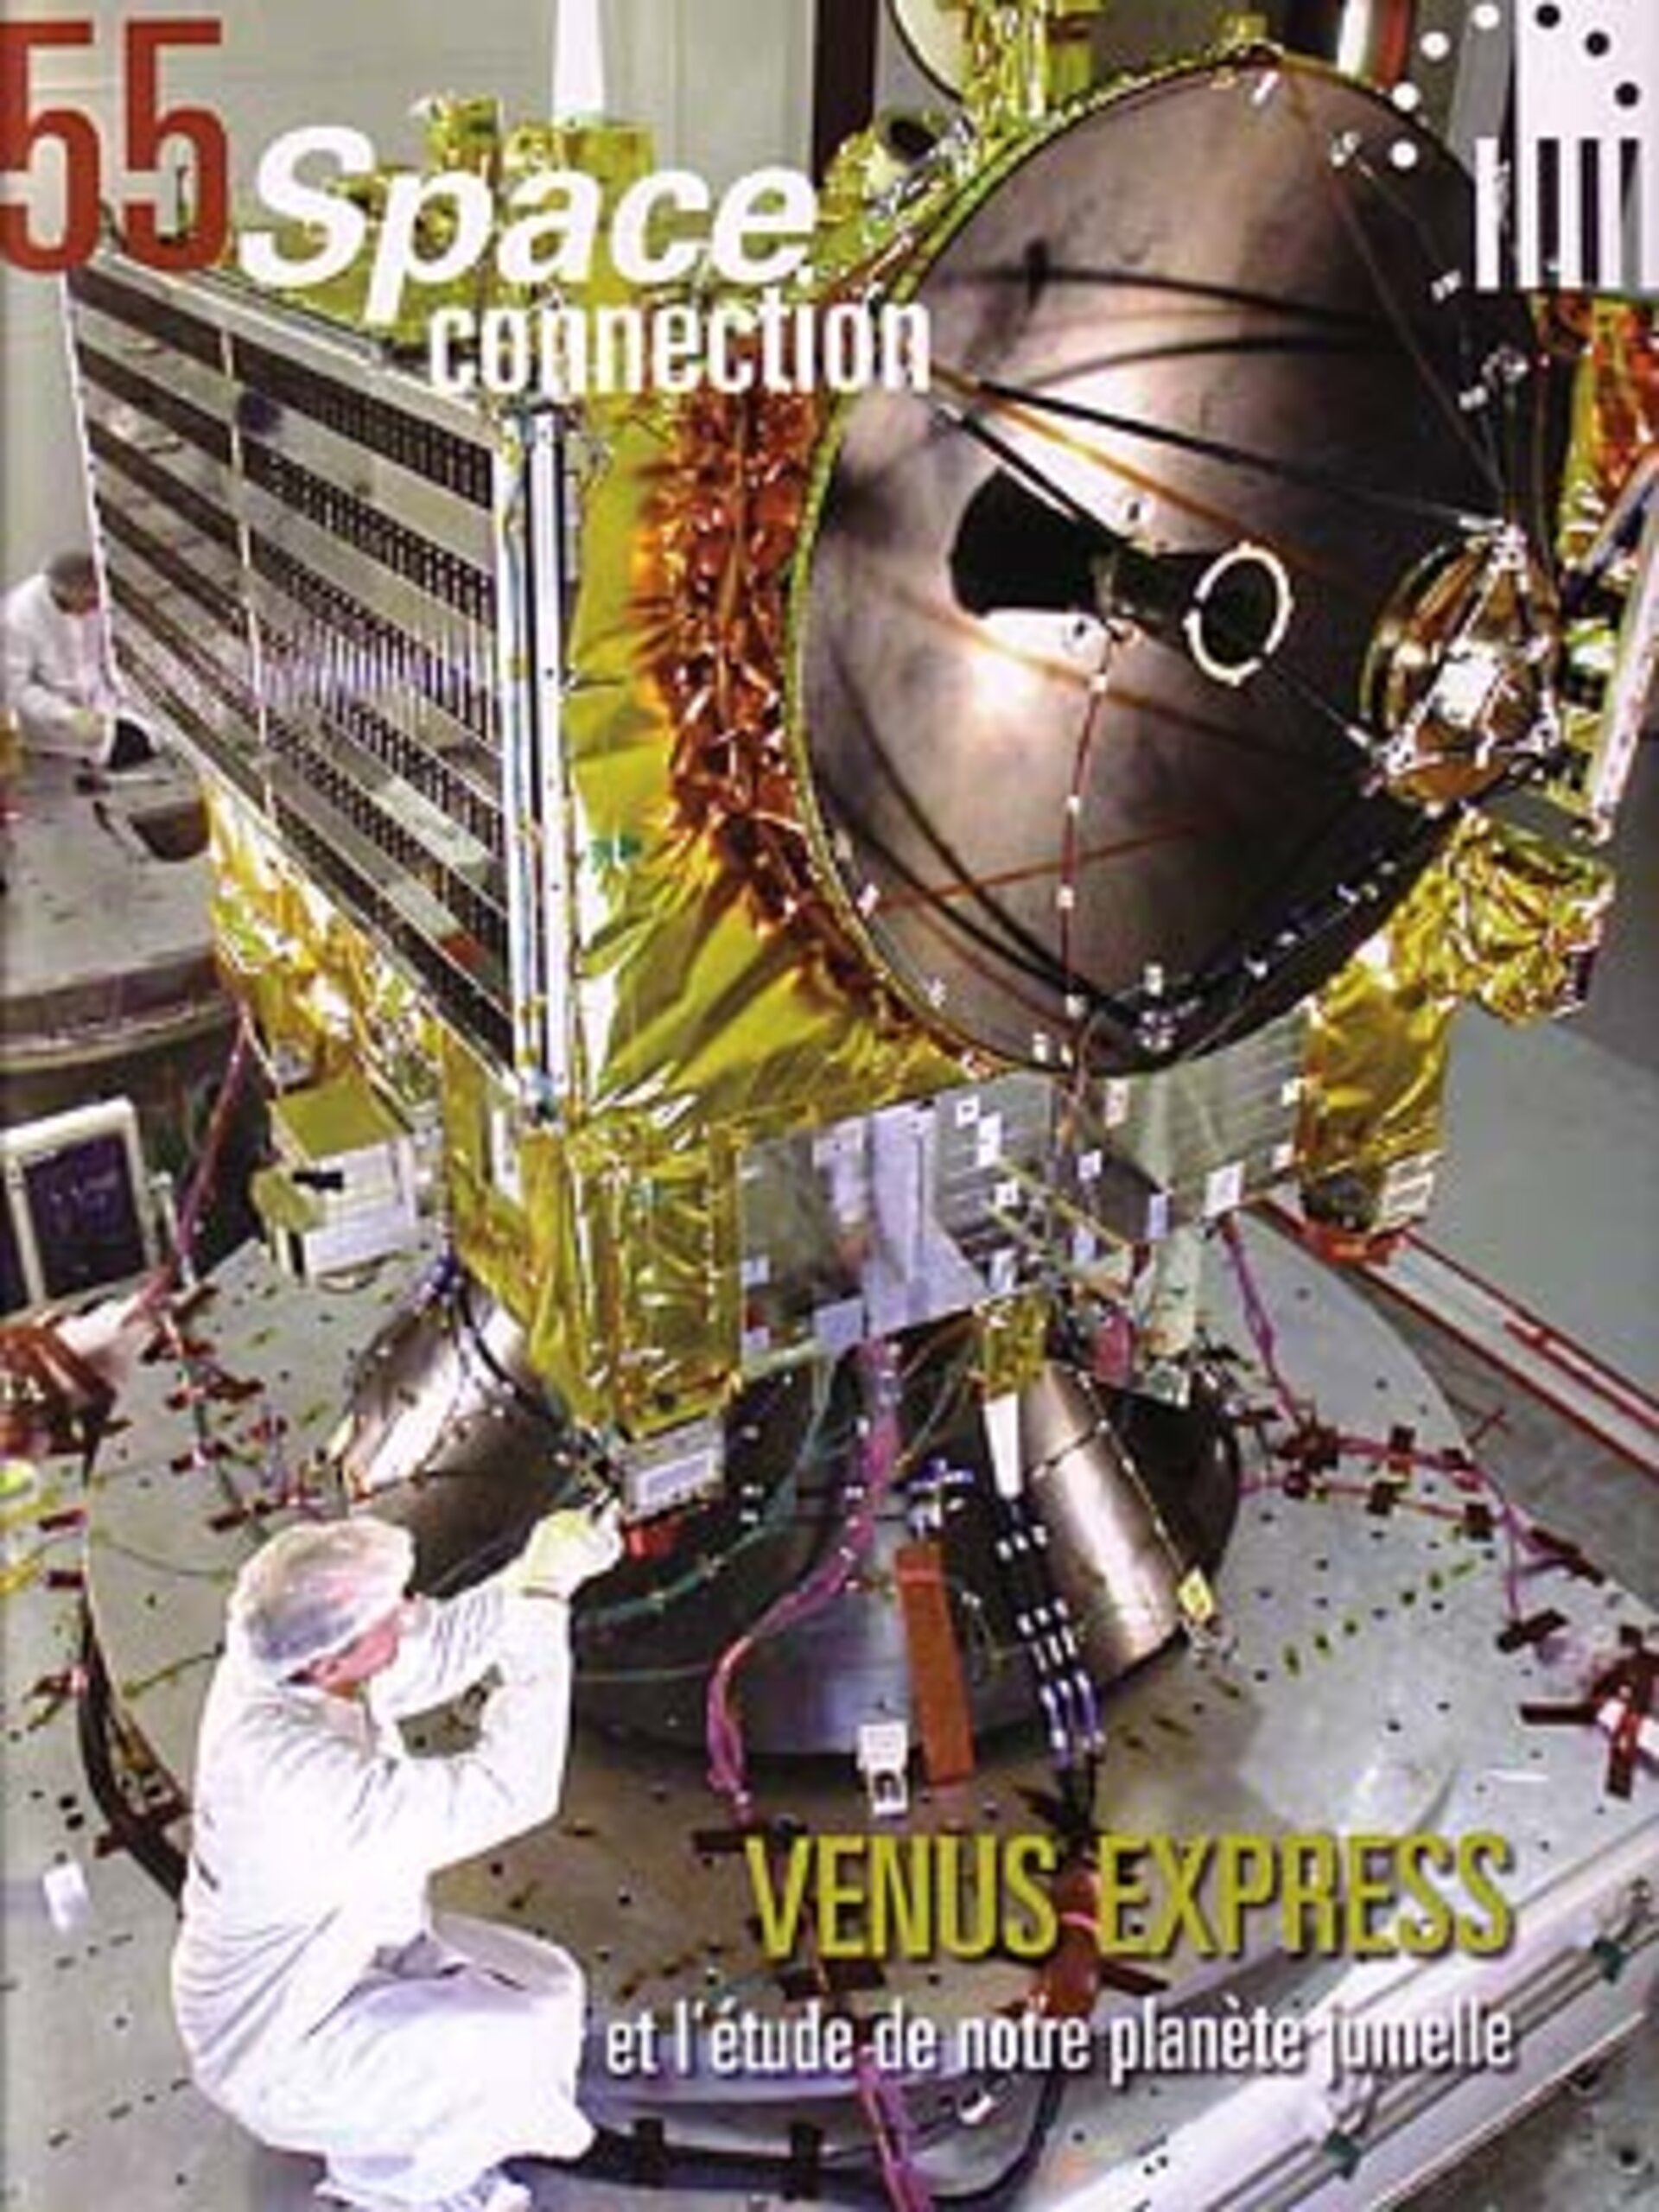 La dernière parution du Space Connection: au sujet de Venus Express